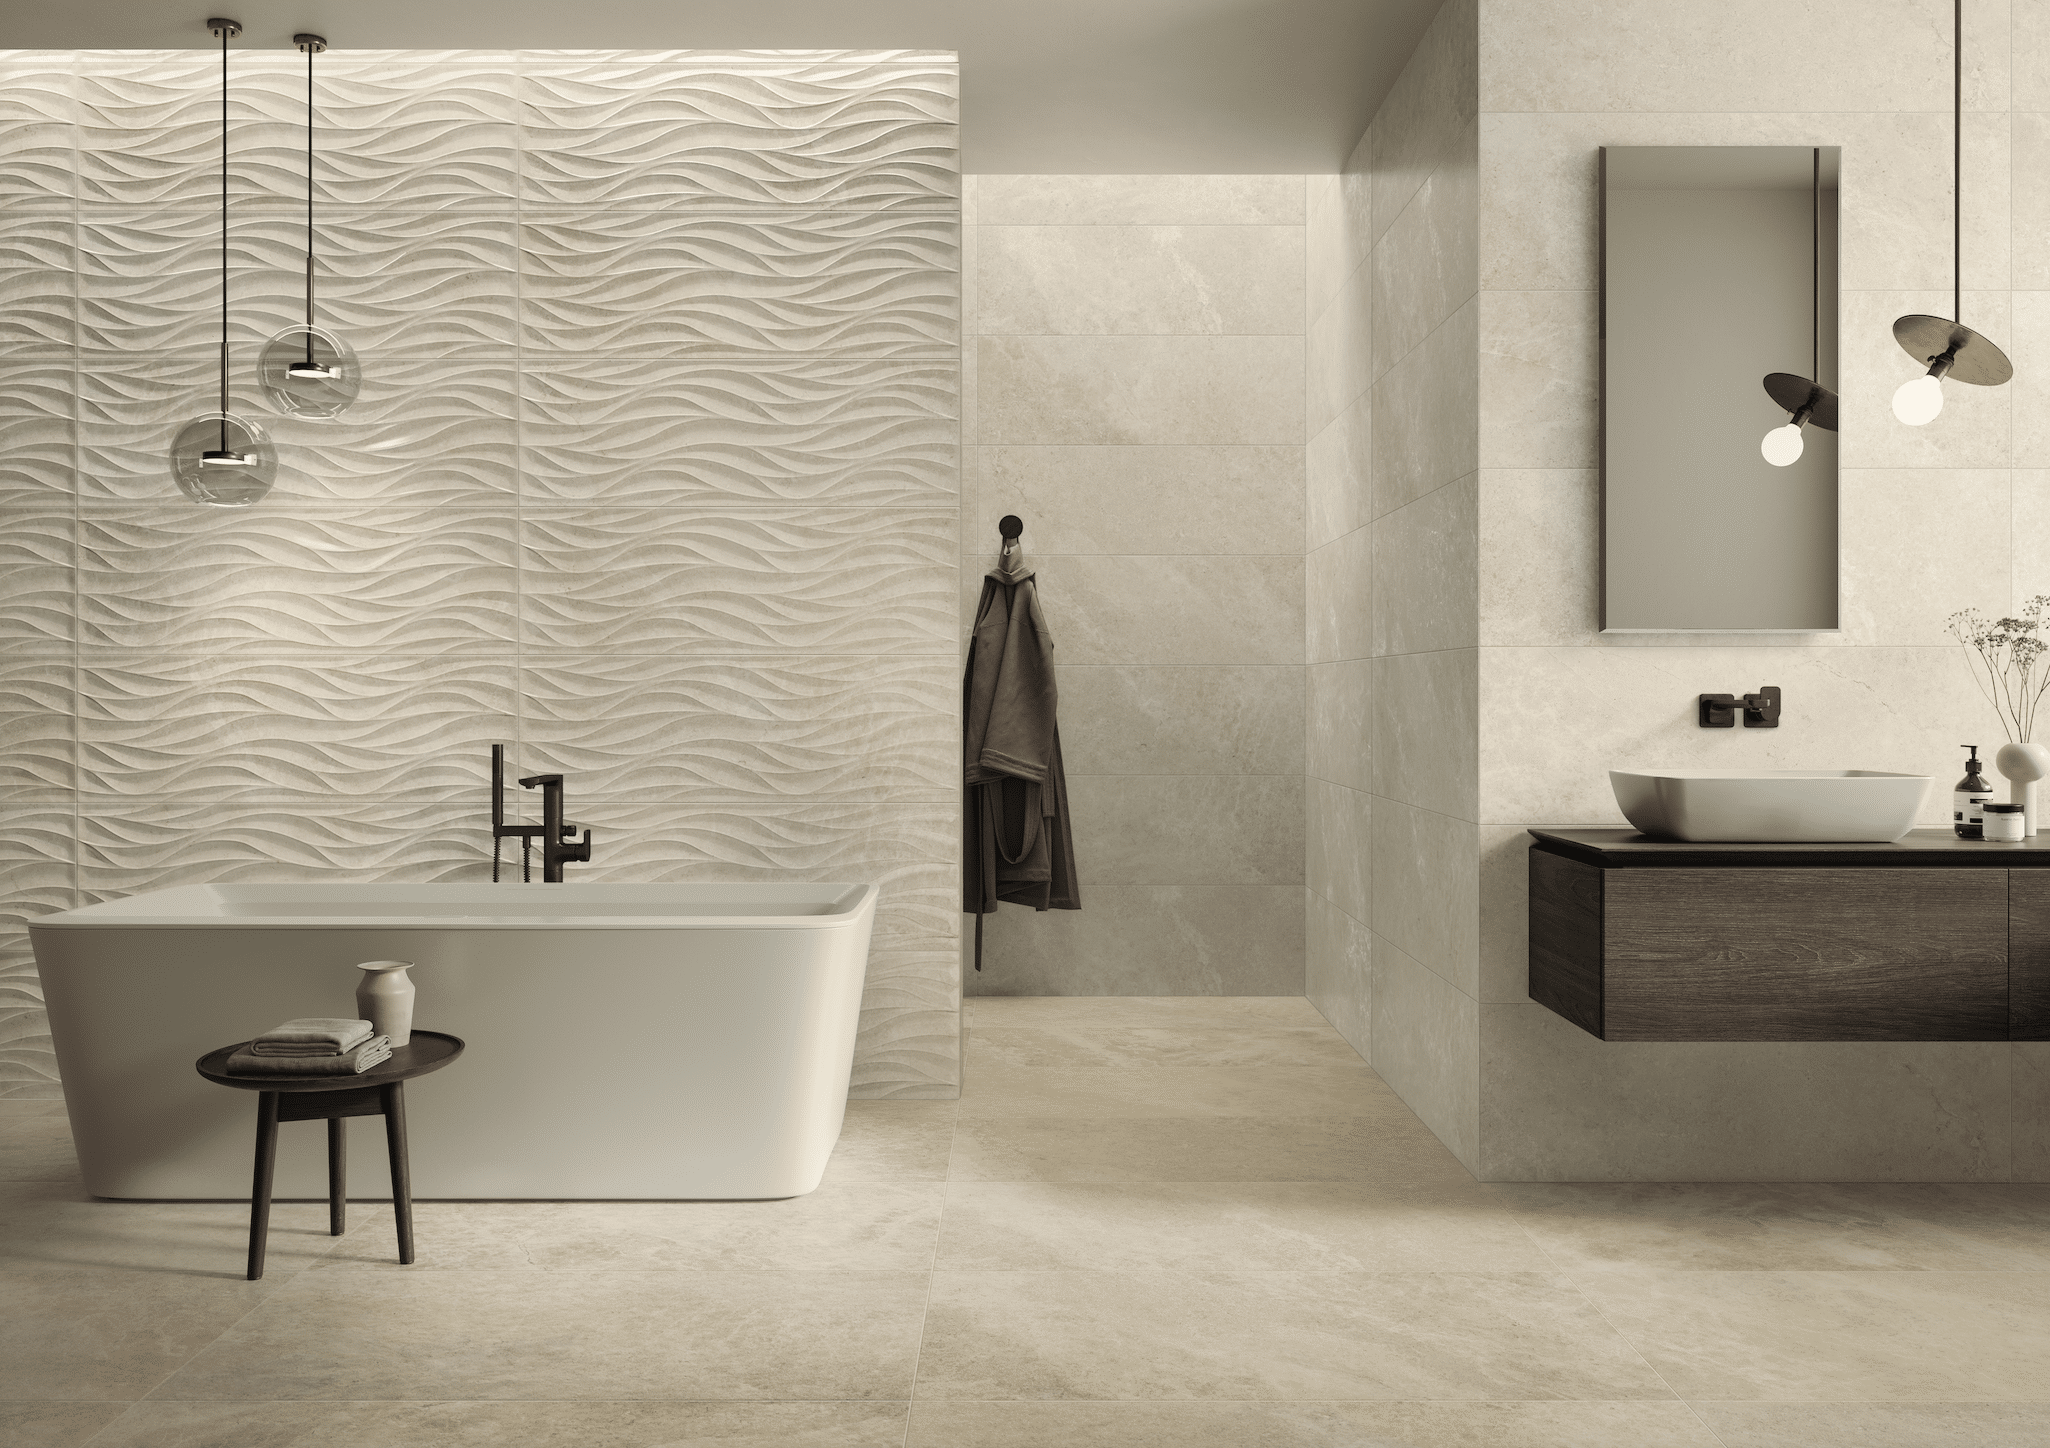 C. Bergmann zeigt ein helles Badezimmer mit gefliester Wand und gemusterten Fliesen, eine freistehende Badewanne und Hängelampen aus Glas von Villeroy & Boch.